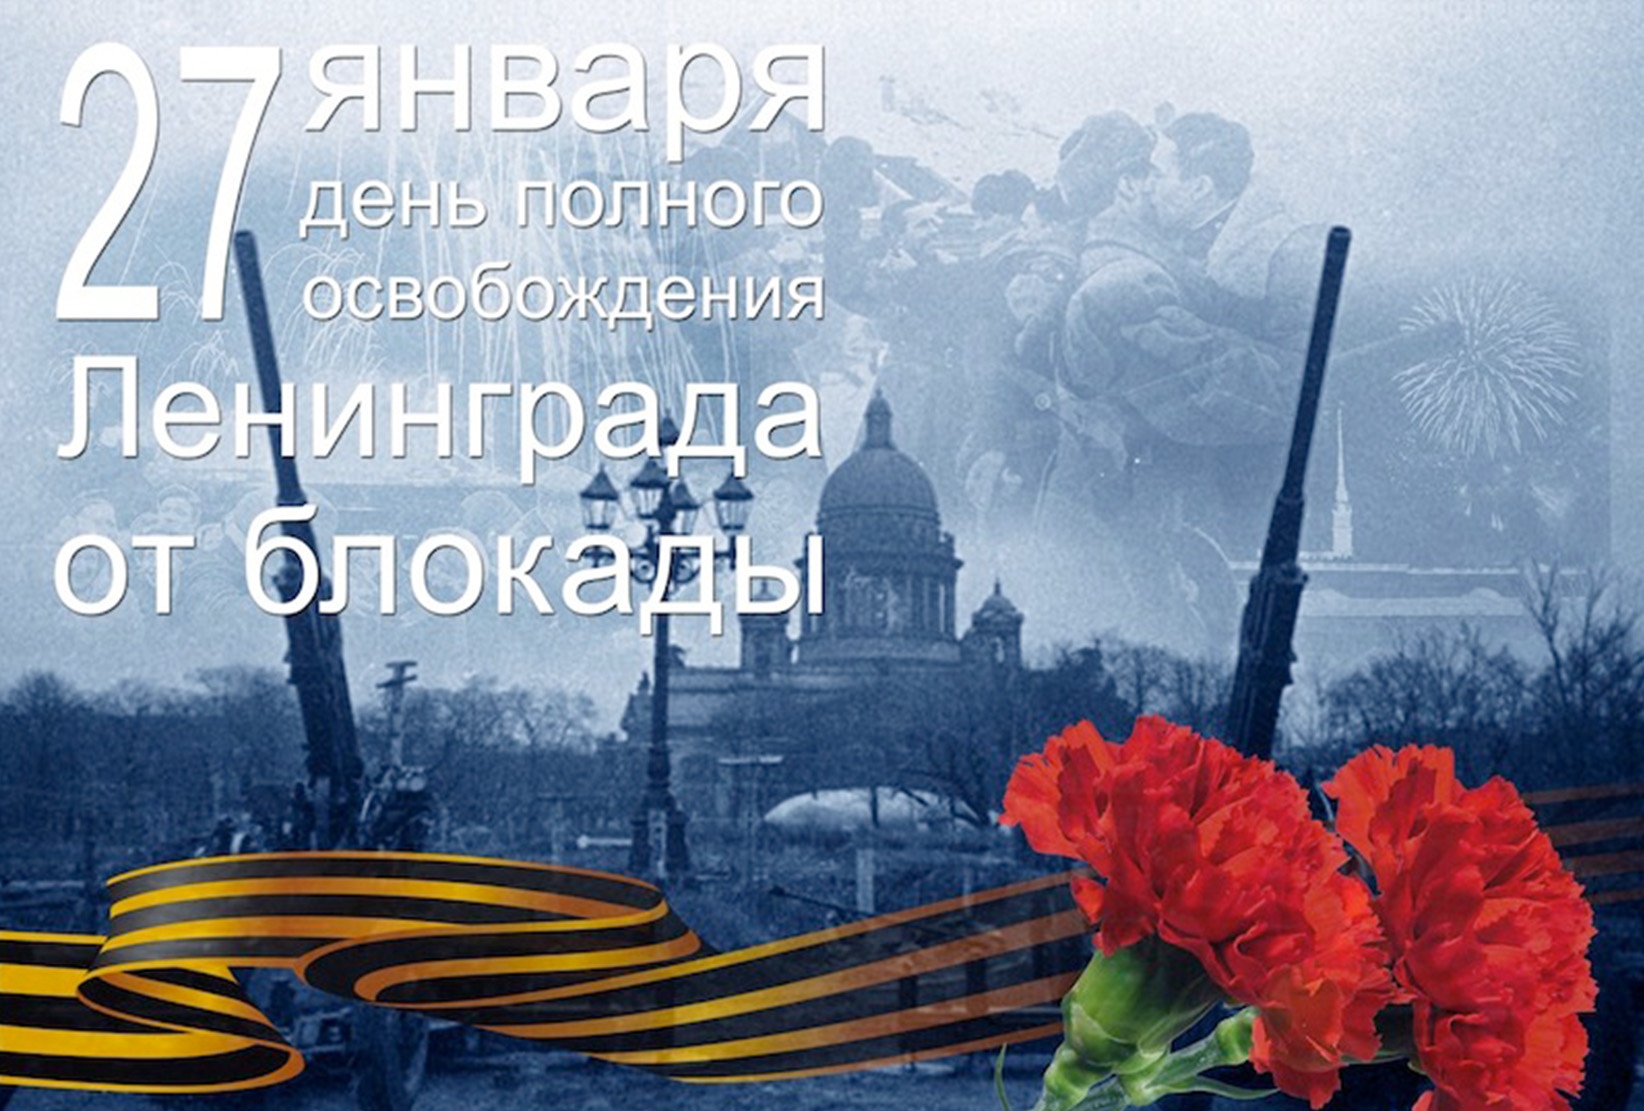 Глава города Алексей Соколов и председатель горсовета Николай Балахин поздравляют с Днем снятия блокады Ленинграда!